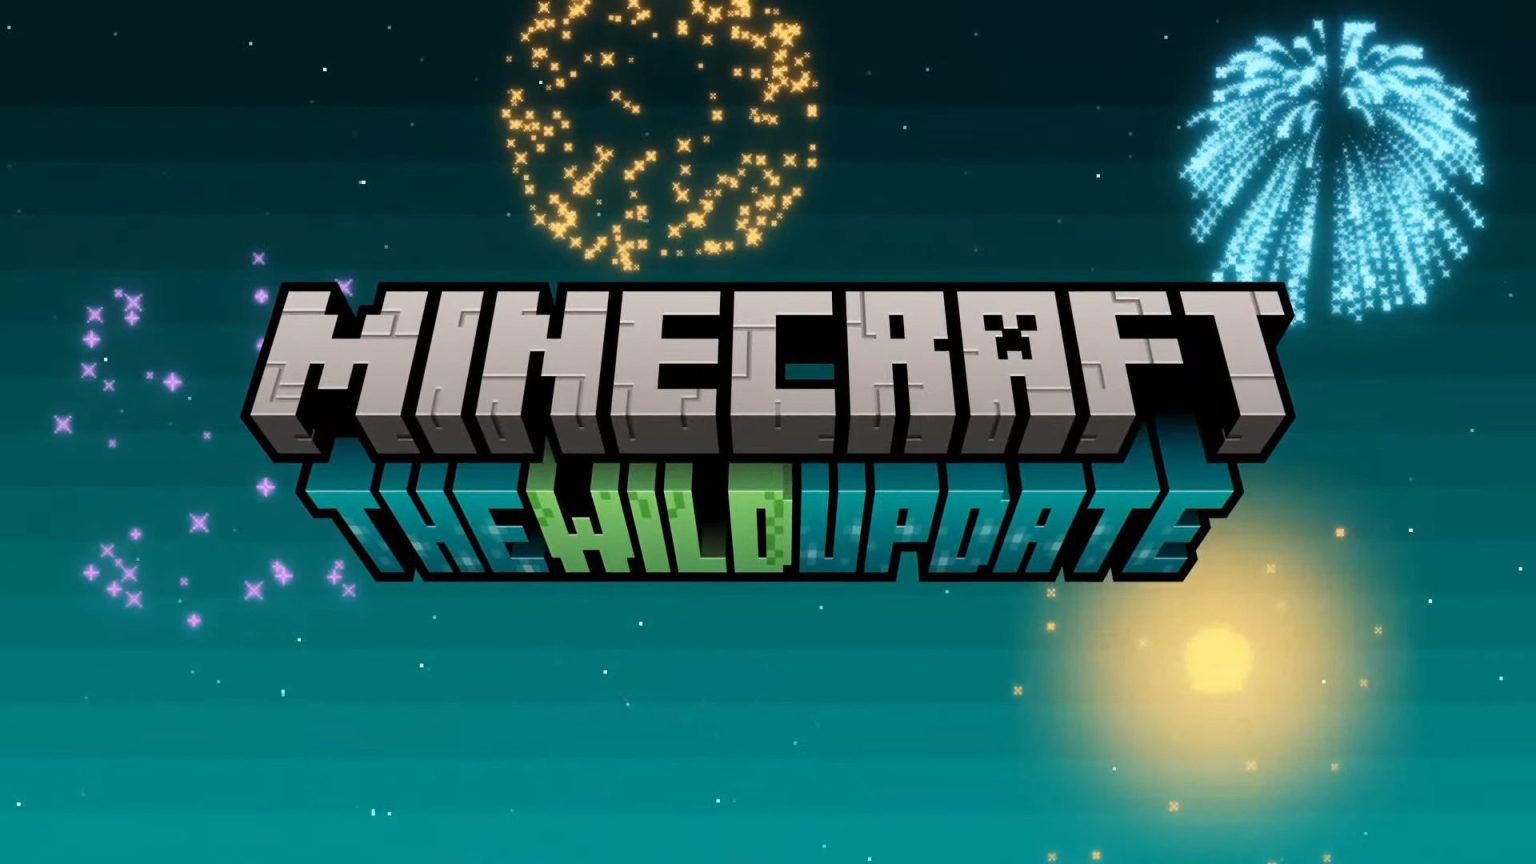 Minecraft - The Wild Update